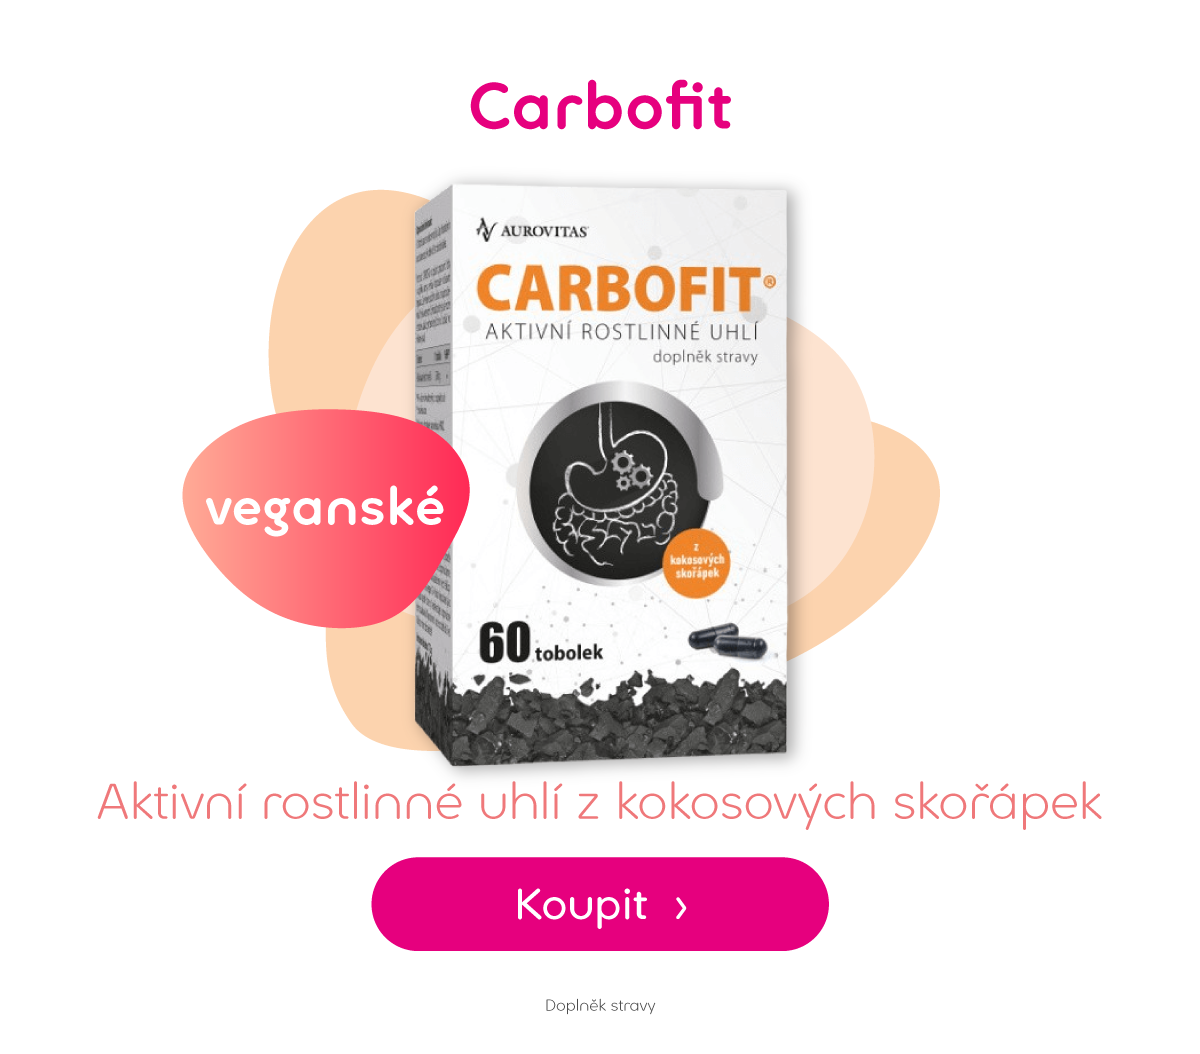 Carbofit